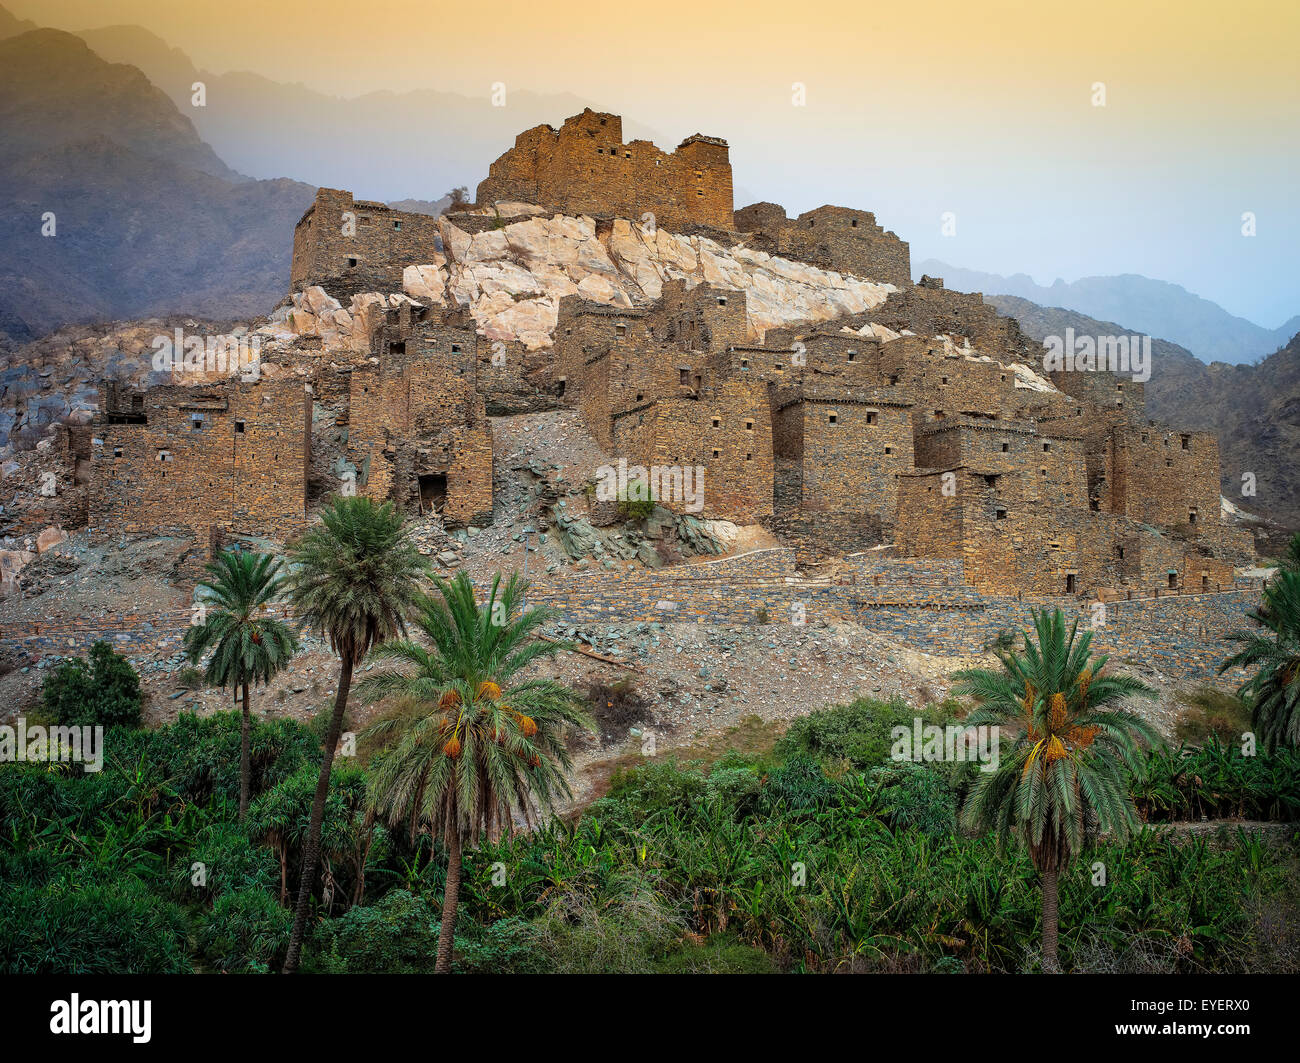 La fortaleza de Masmak; Taif, Arabia Saudita Foto de stock